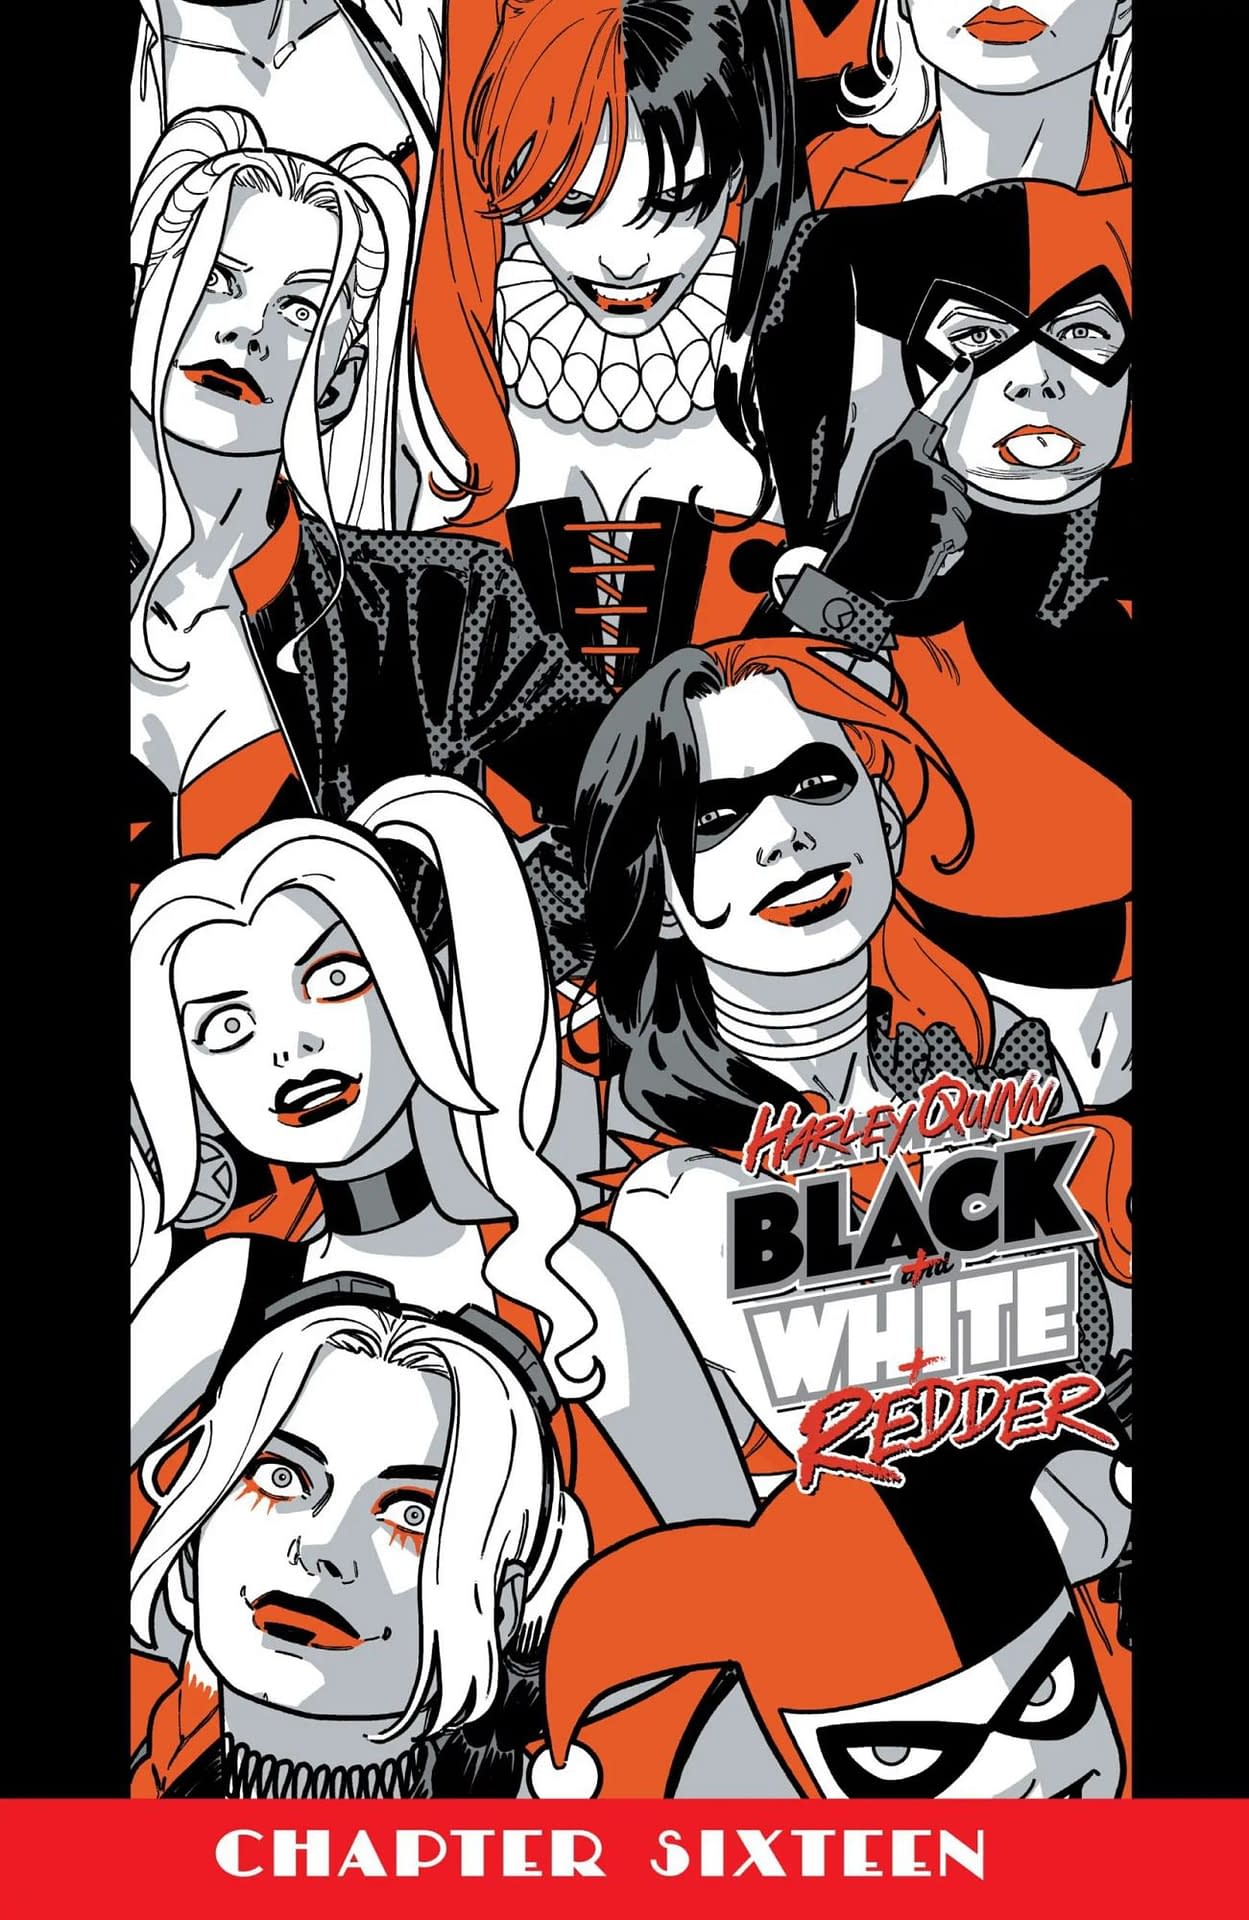 Harley-Quinn-Black-White-Redder-6-2-scal